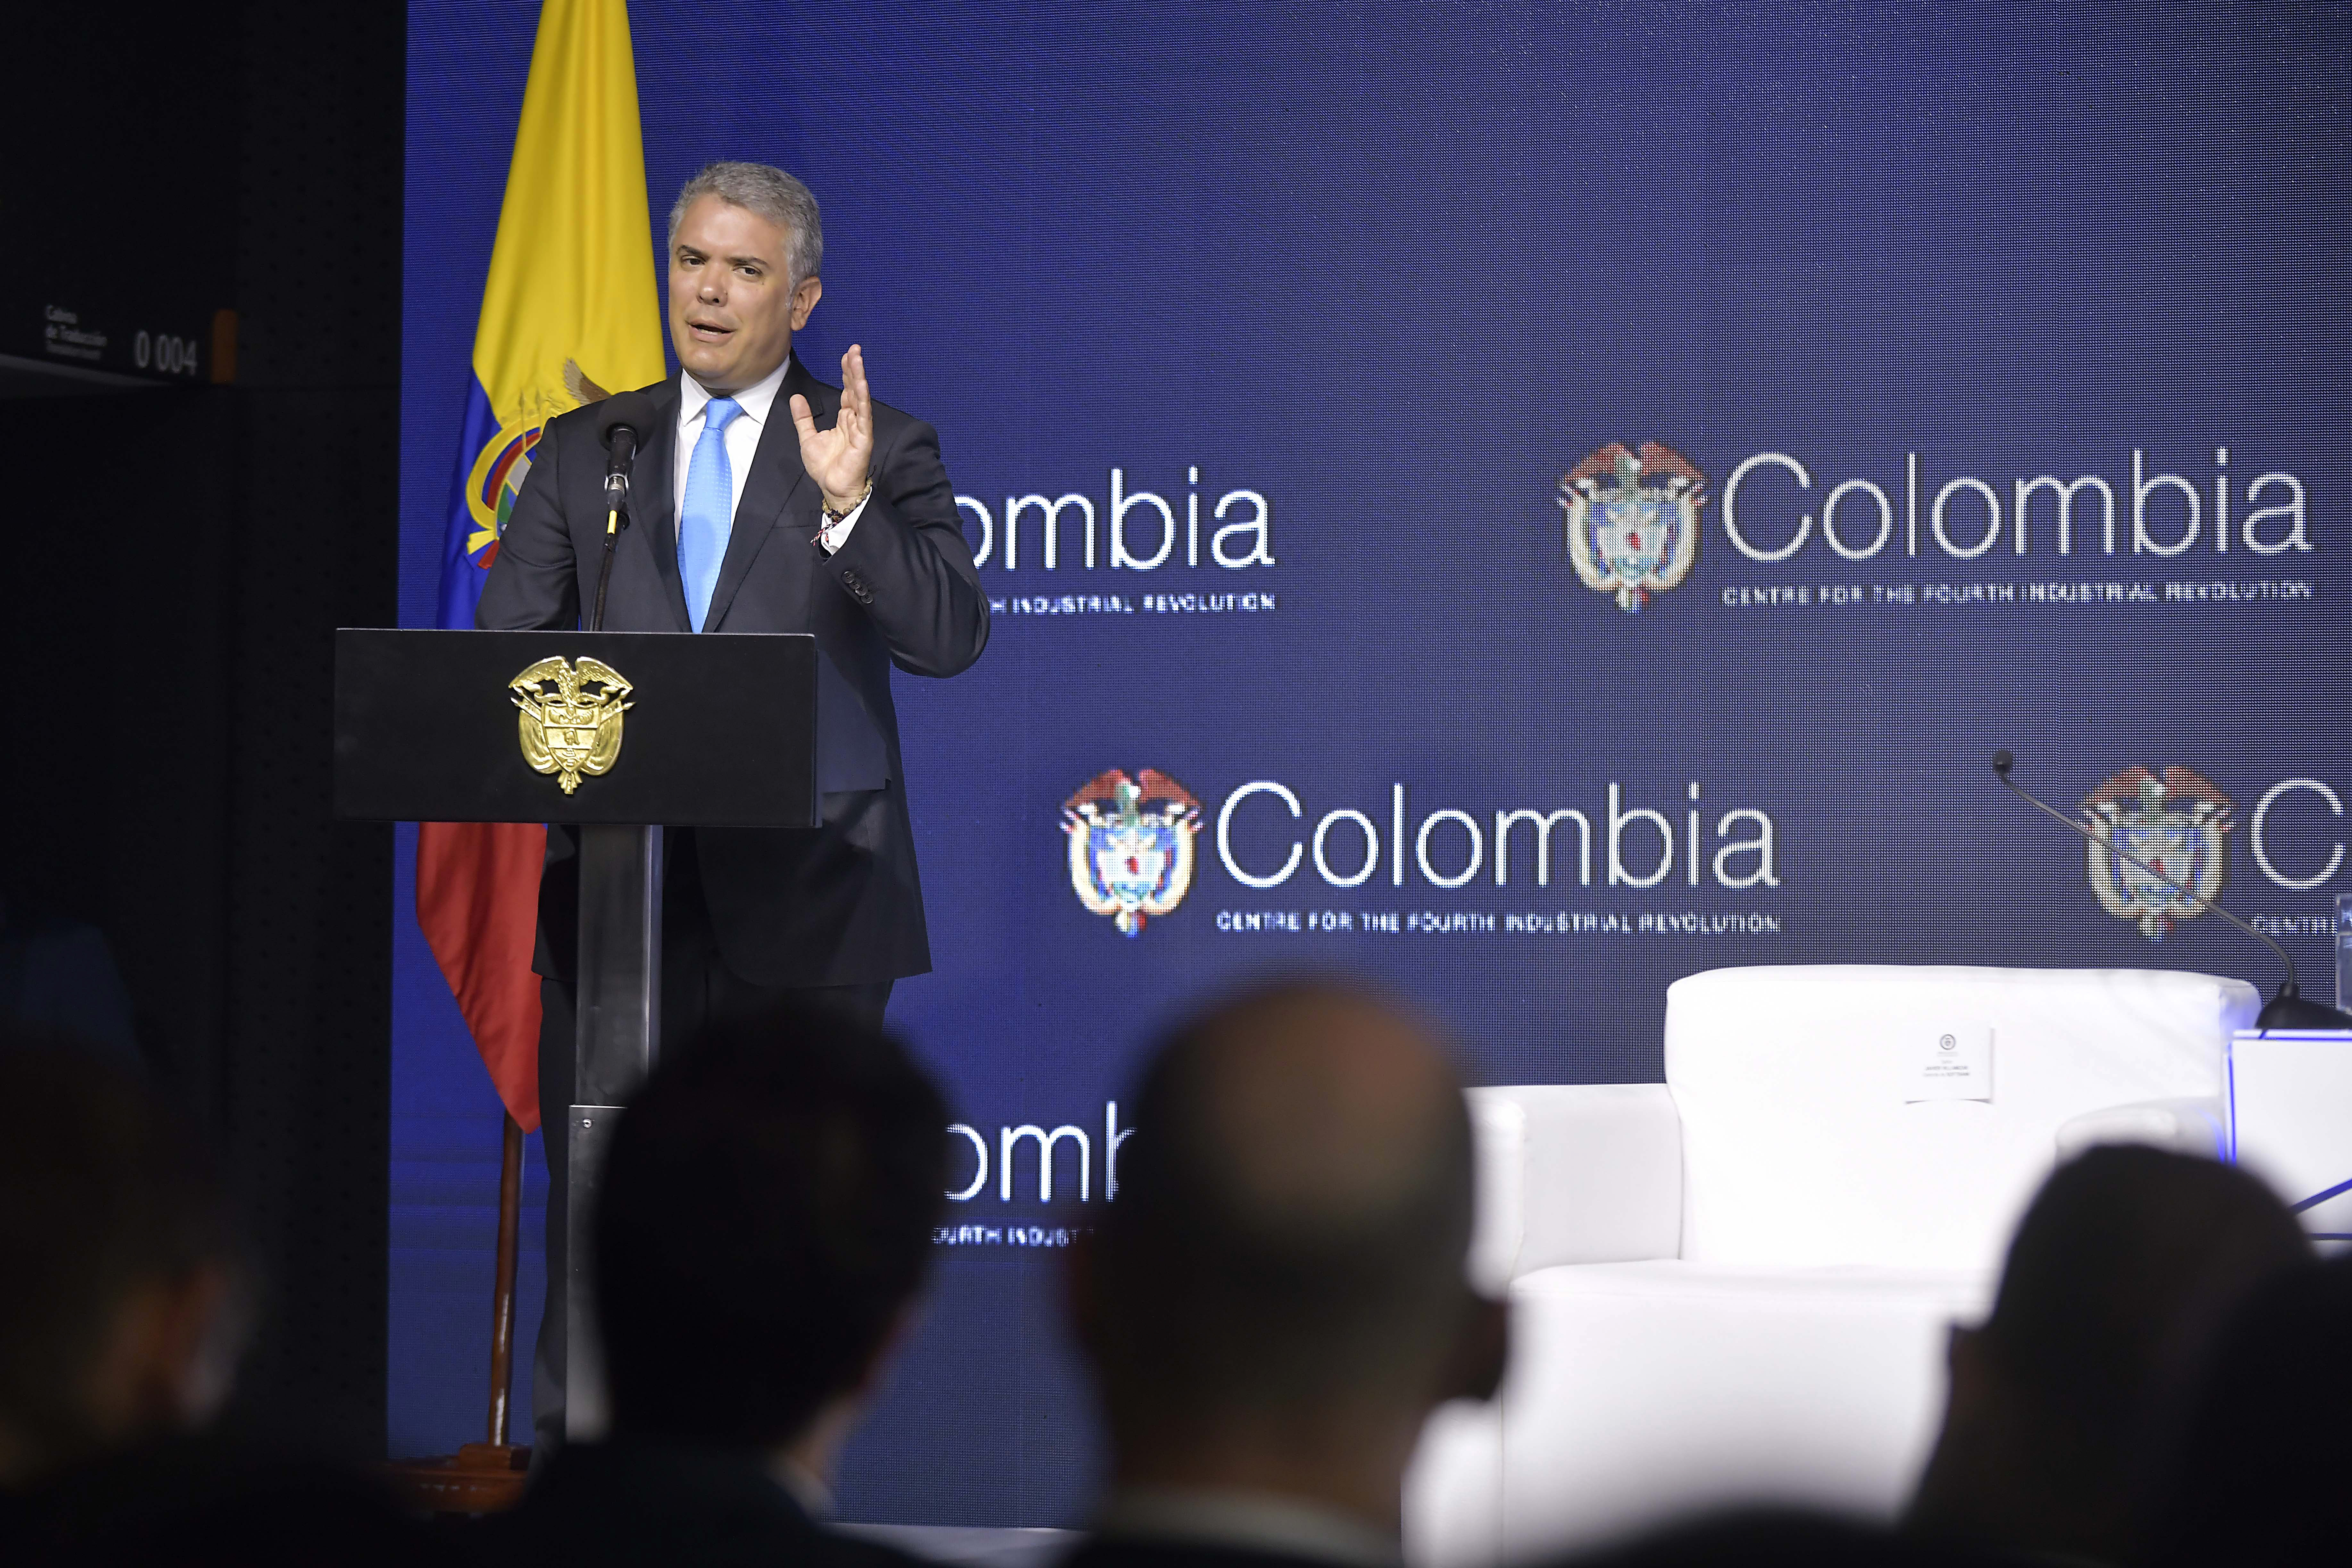 Estoy muy orgulloso de que Colombia y Medellín hayan asumido la iniciativa de estar al frente de la Cuarta Revolución Industrial: Klaus Schwab, fundador del Foro Económico Mundial